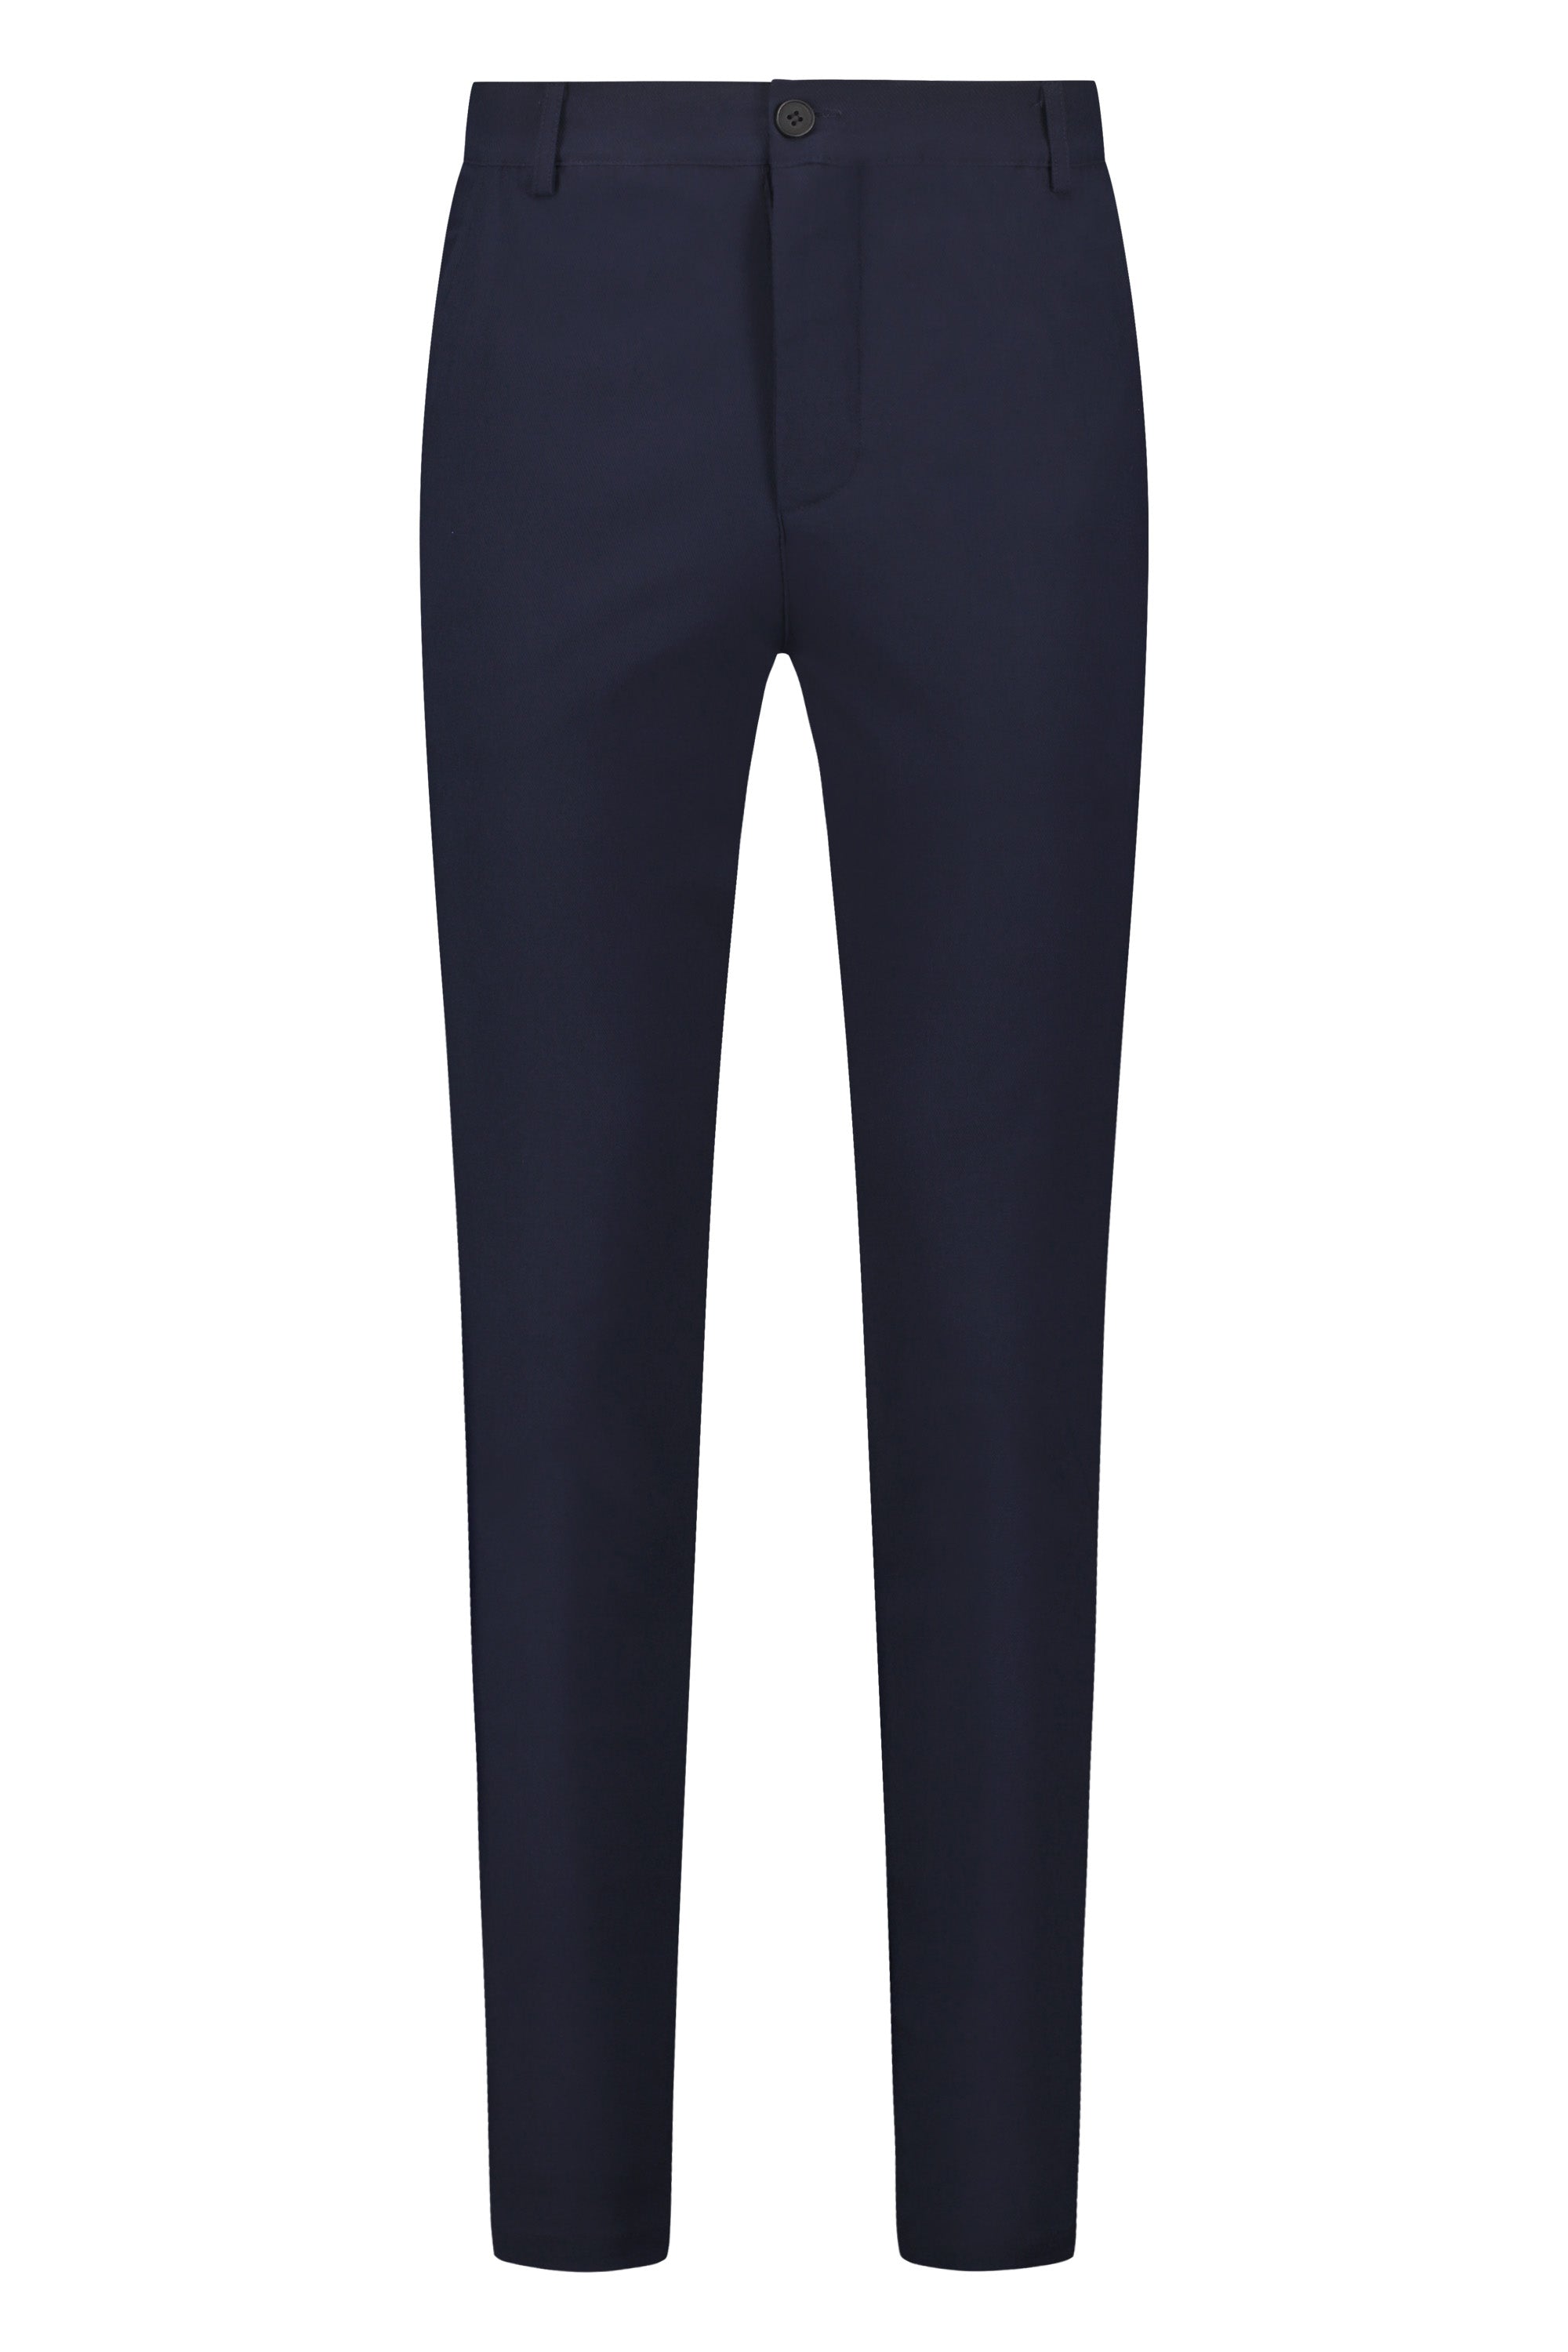 Super stretch trousers dark blue